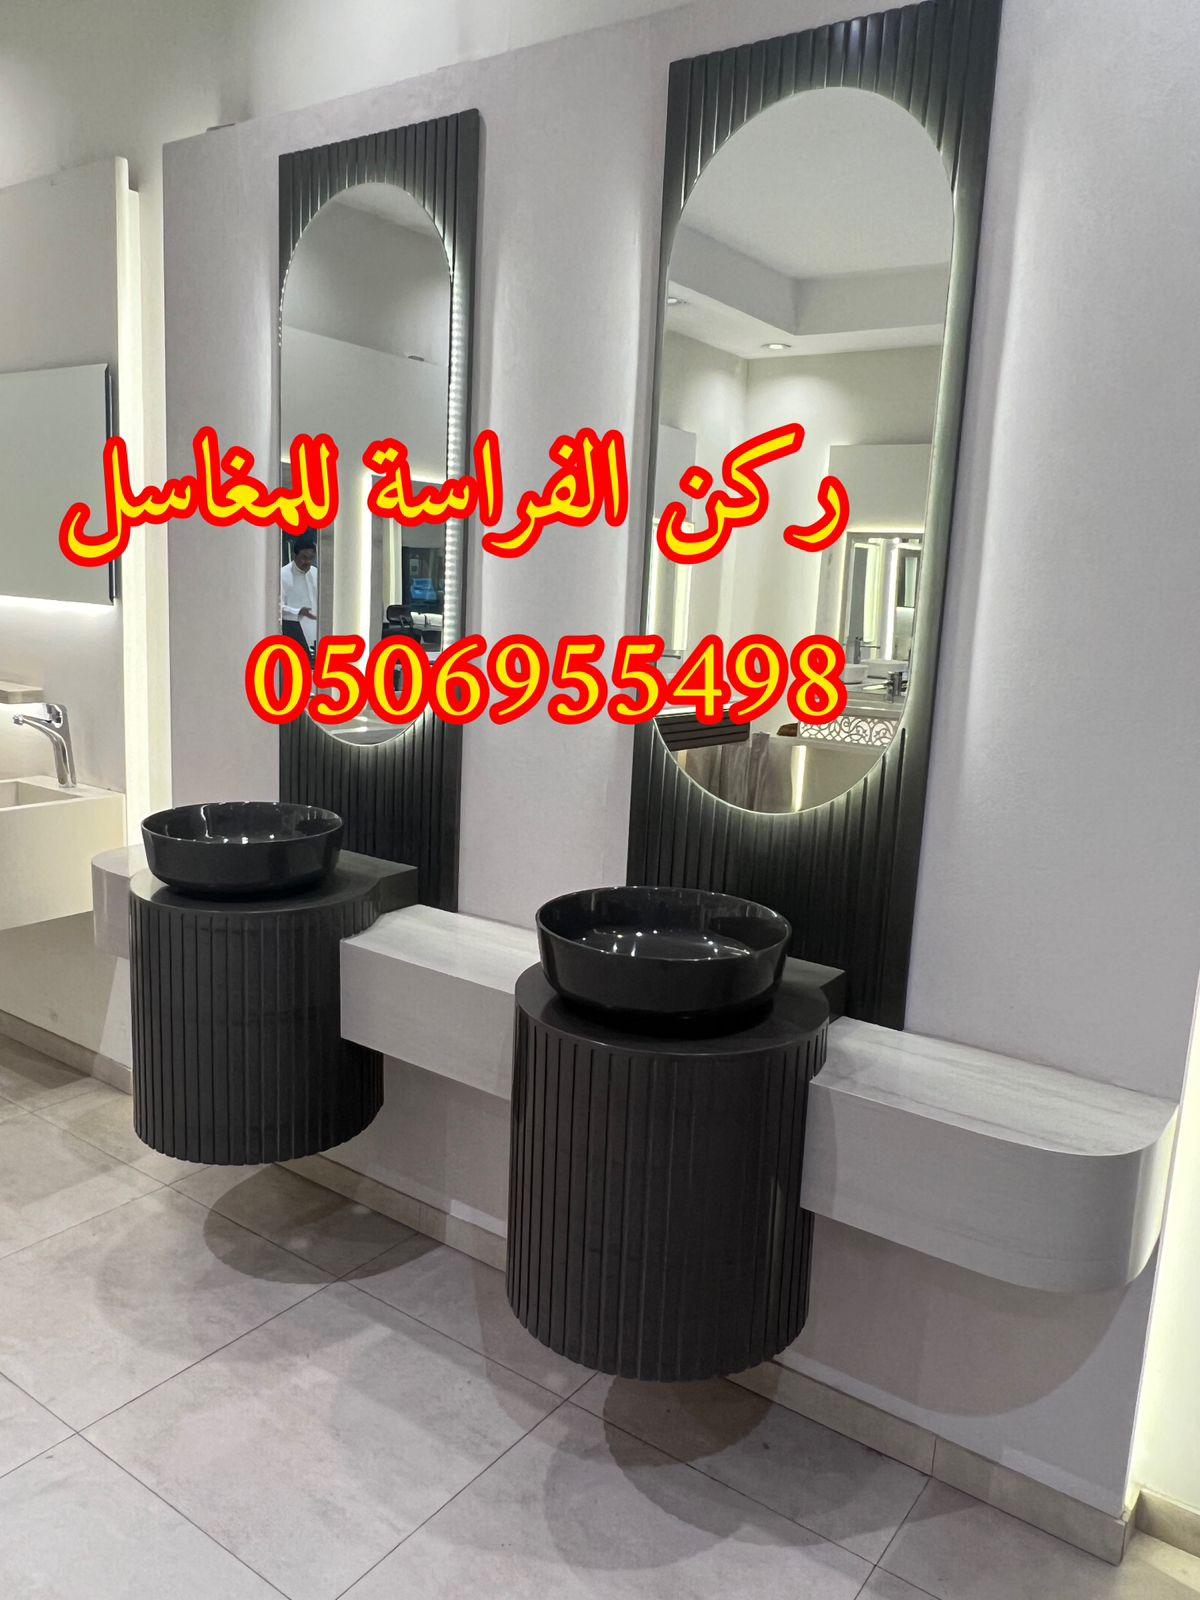 الرياض - اشكال مغاسل رخام حديثة في الرياض,0506955498 618148493